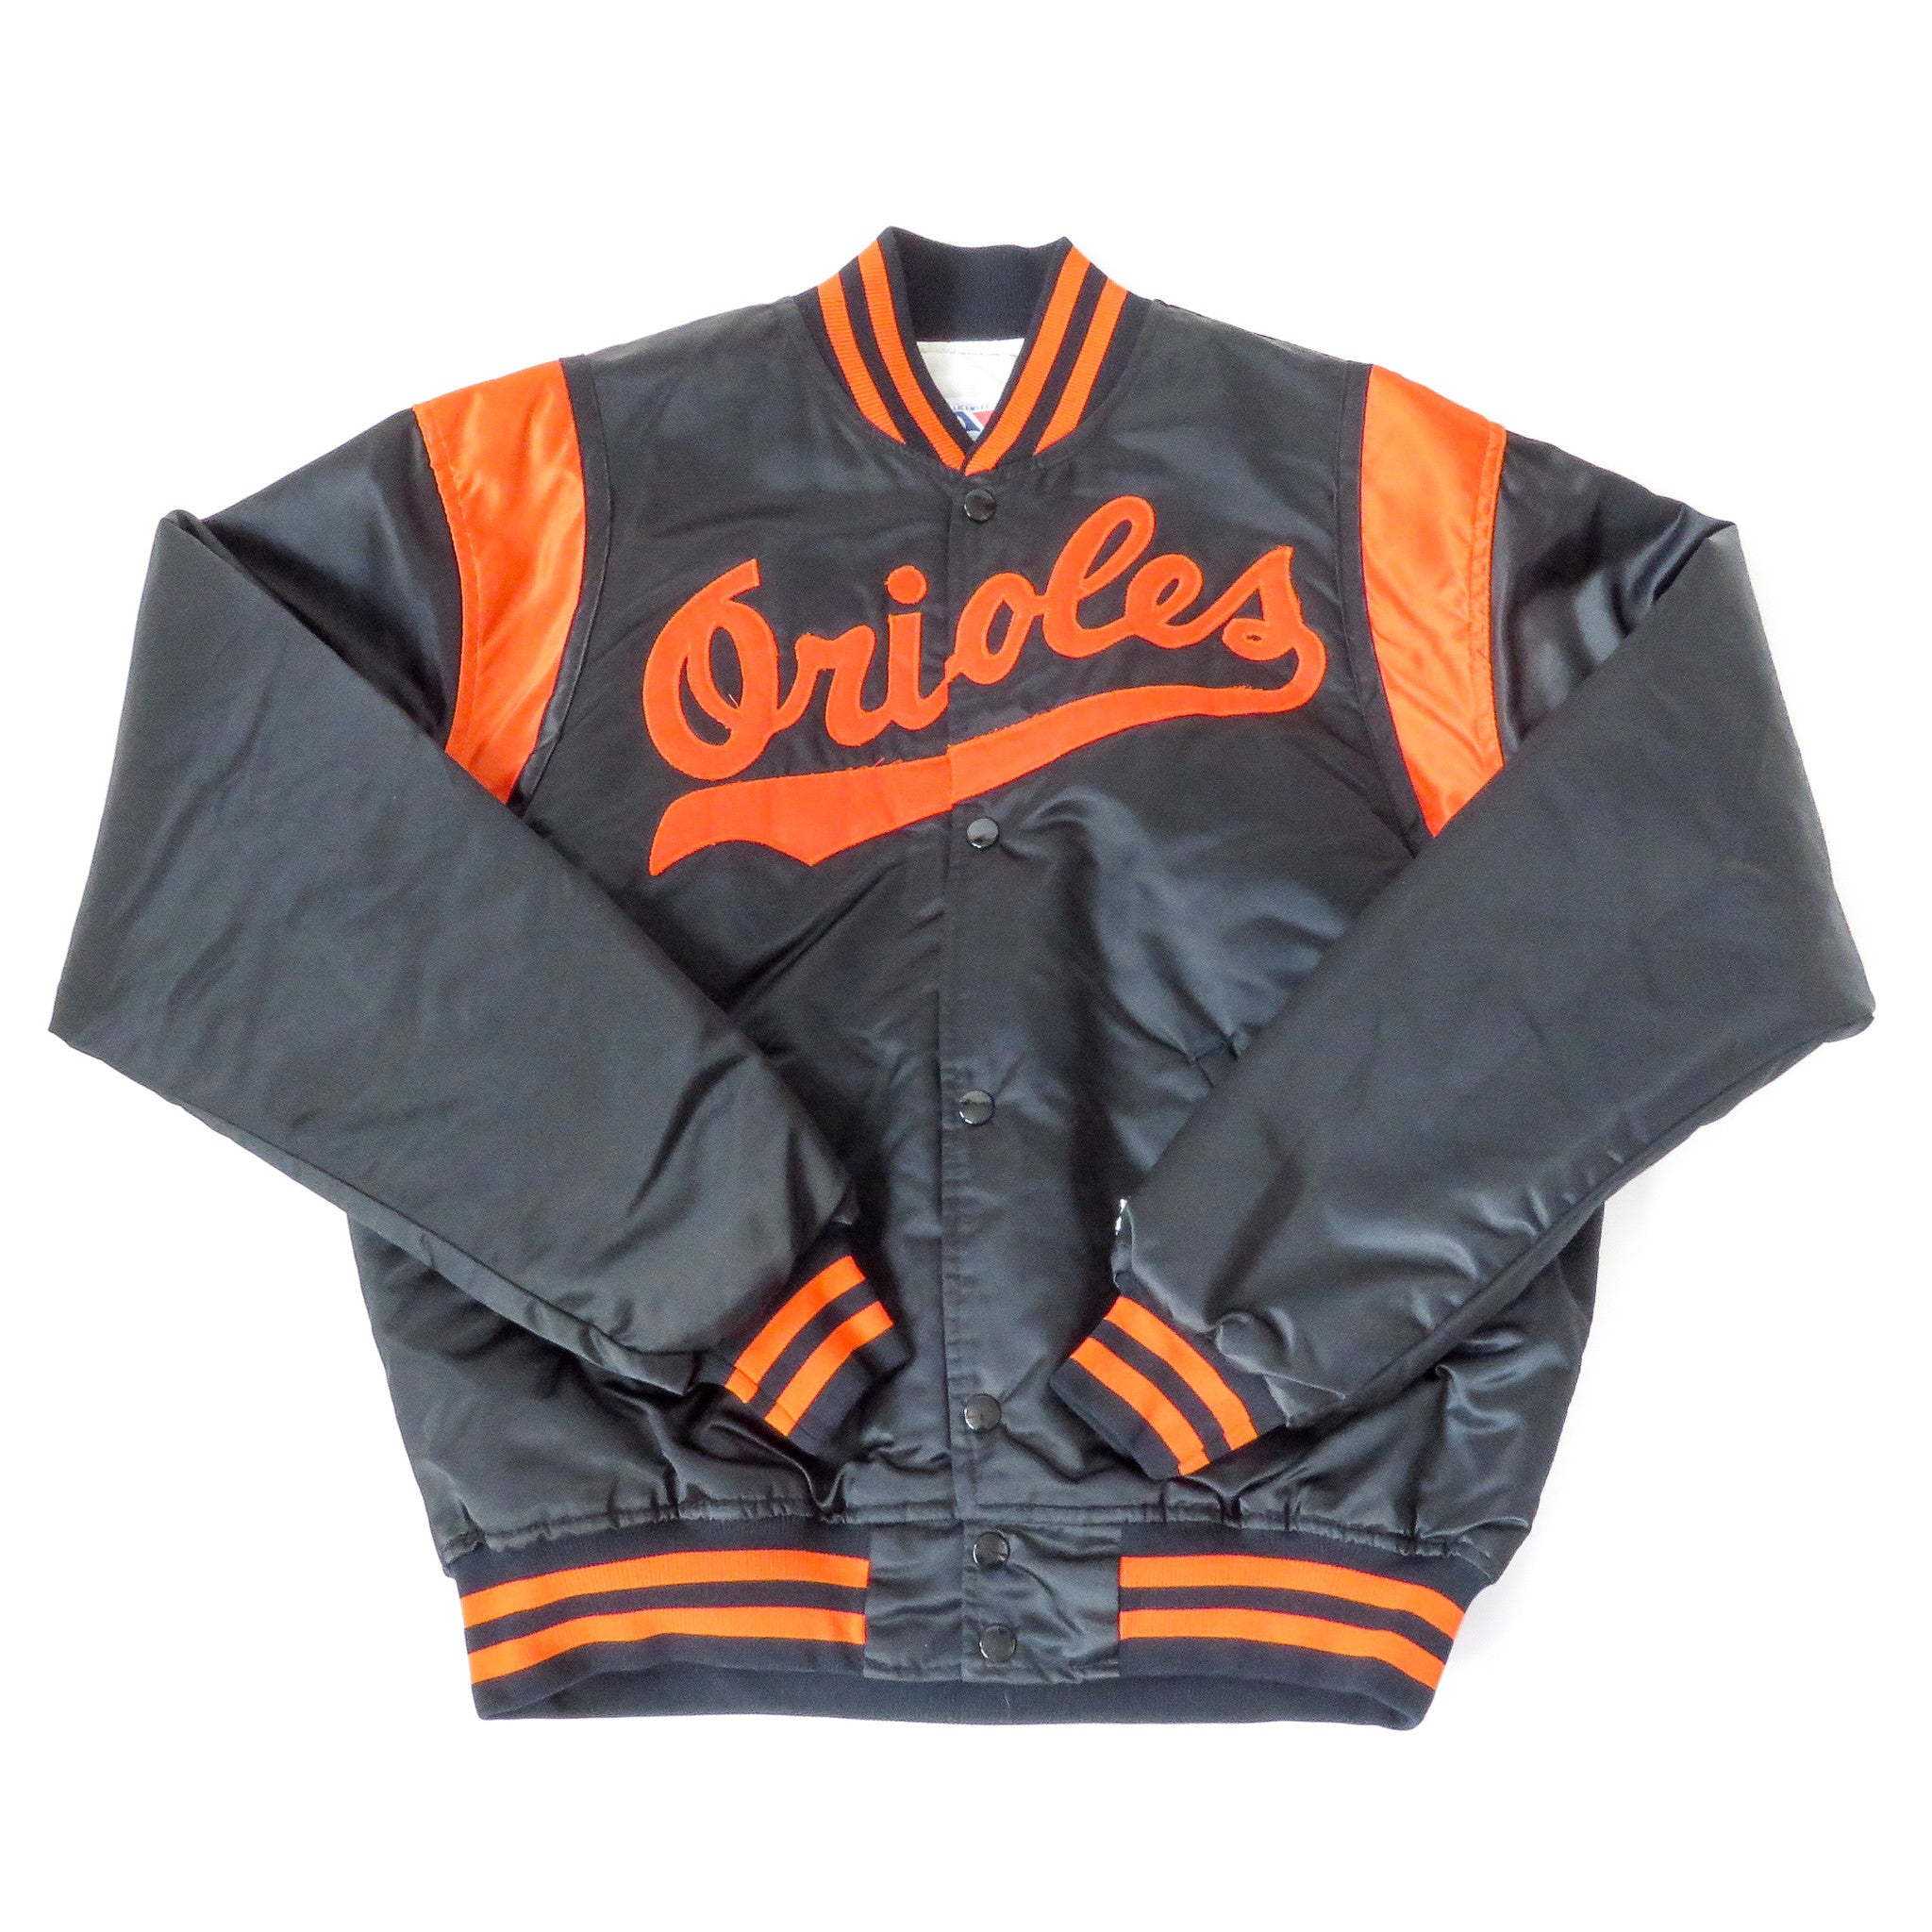 Vintage Baltimore Orioles Starter Jacket Sz L